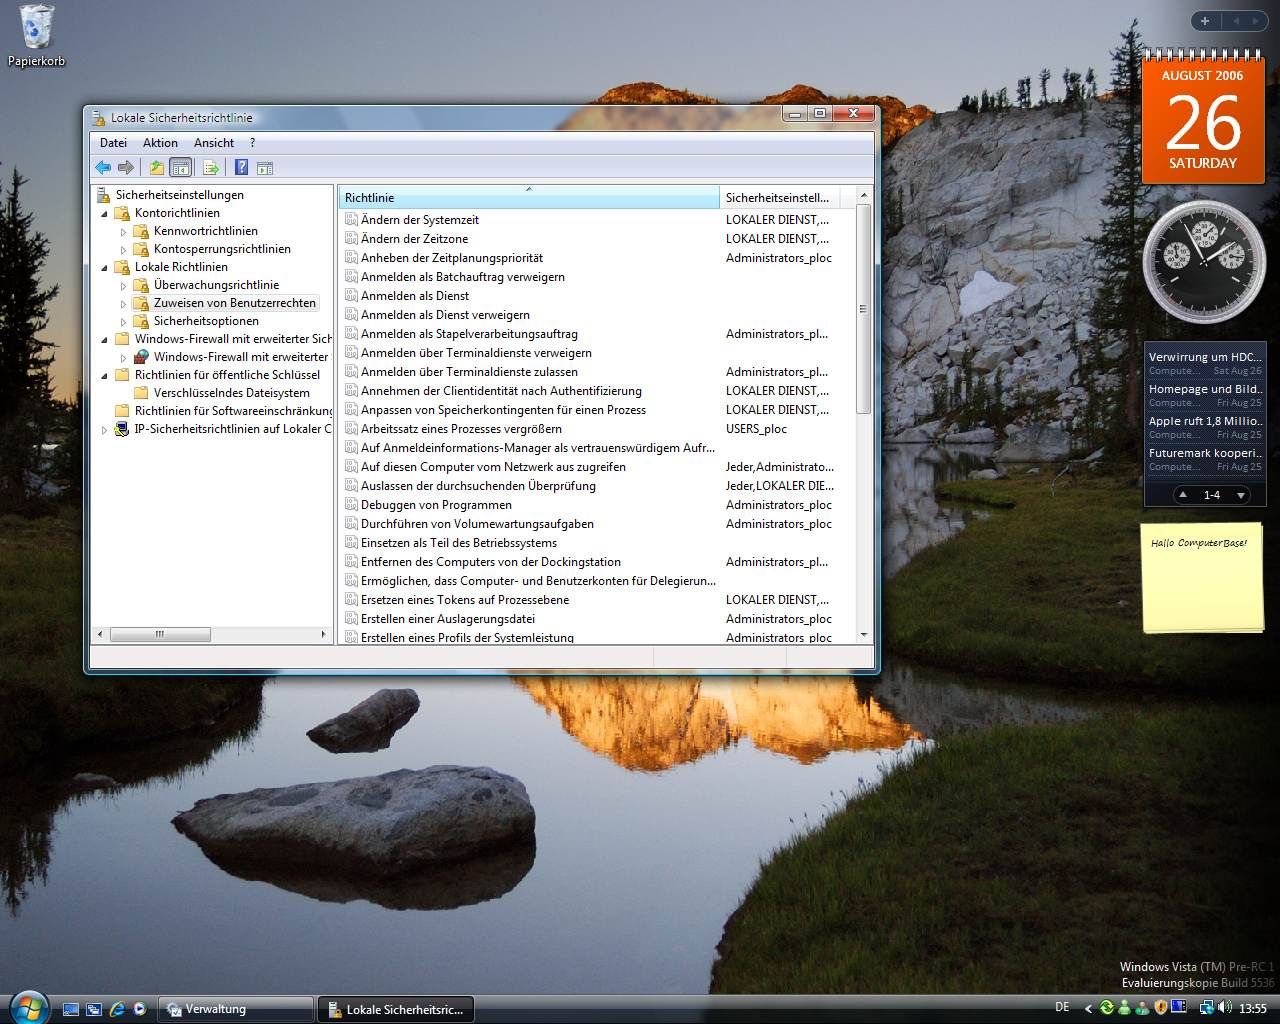 Windows Vista Build 5536 - Sicherheitsrichtlinien 2